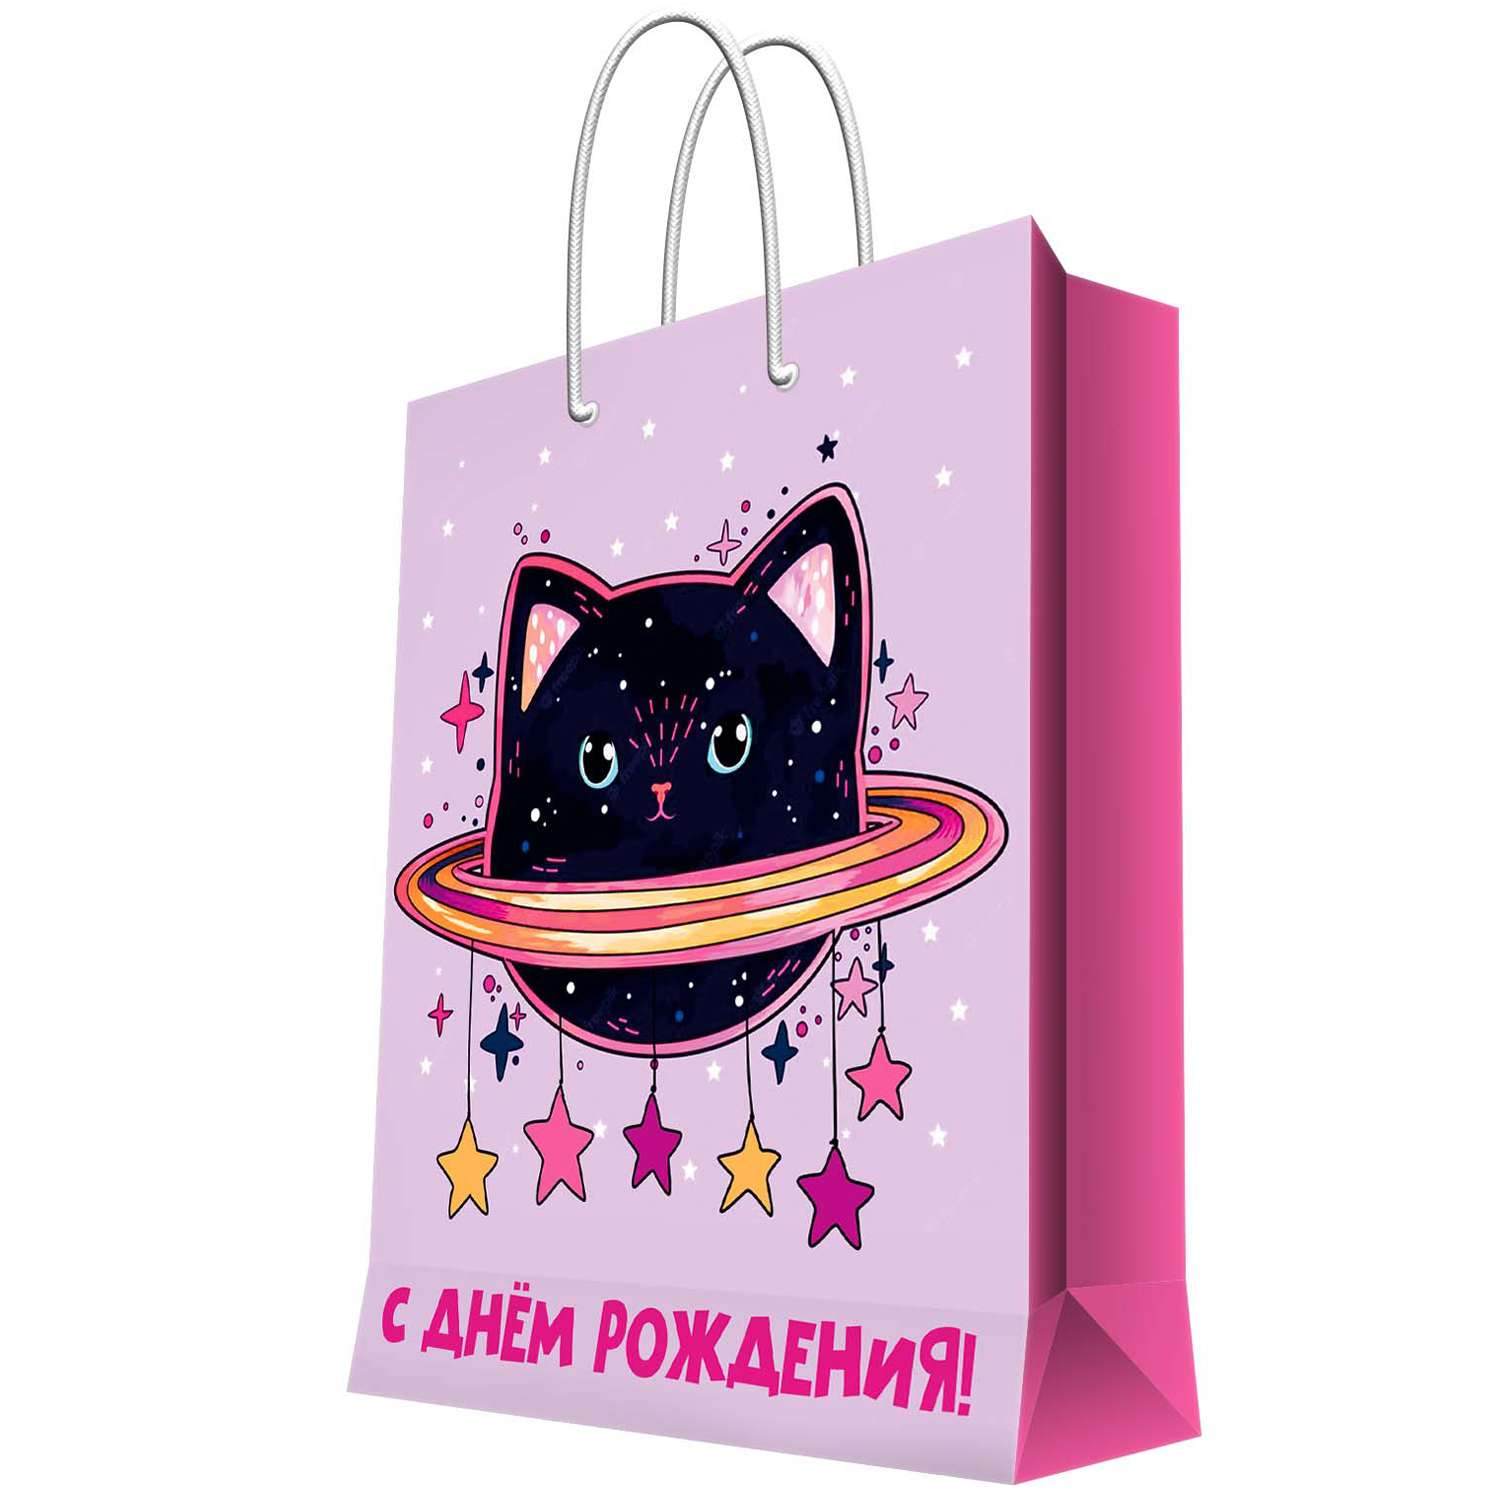 Пакет ФП Космо-кот малый 17.8*22.9*9.8 - фото 1